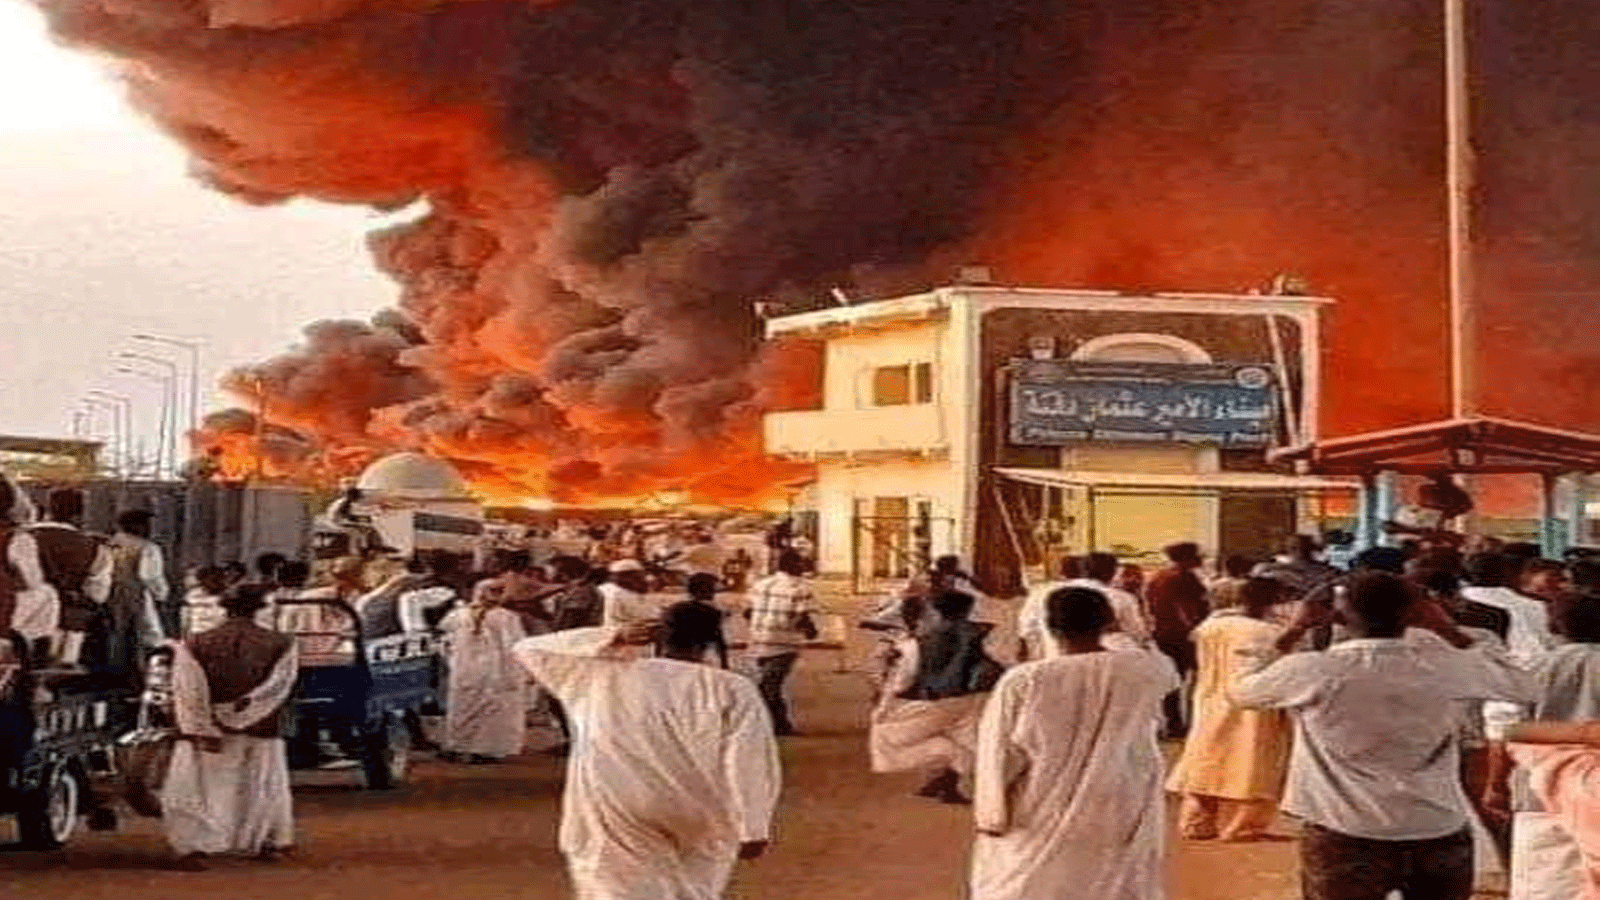 خروج الوضع عن السيطرة بحريق ميناء سواكن في السودان(تويتر)